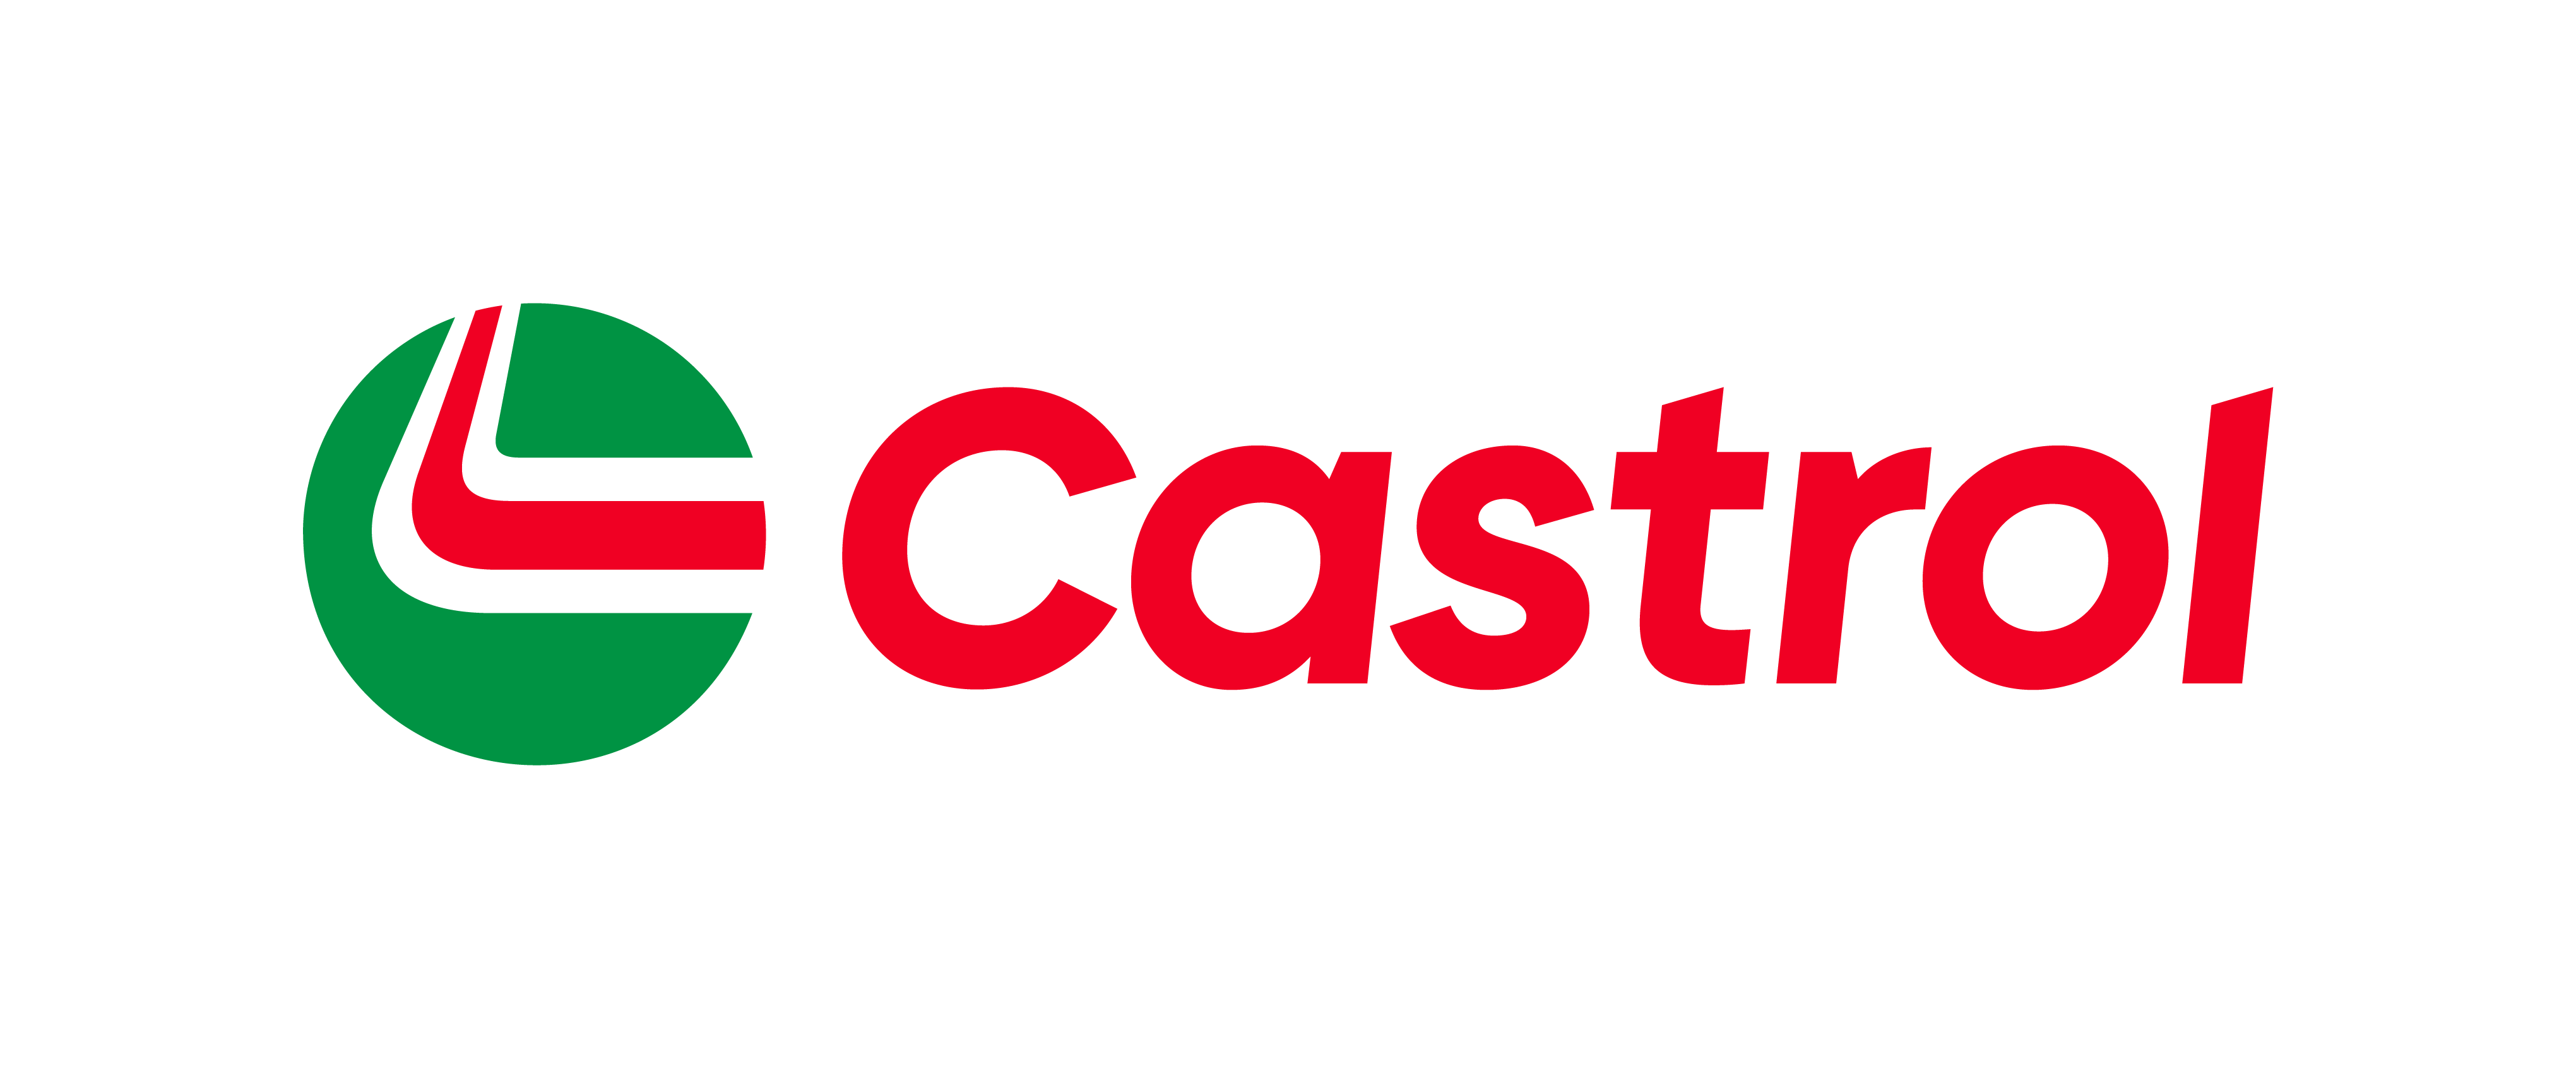 Castrol Horizontal Logo RGB_18sqm